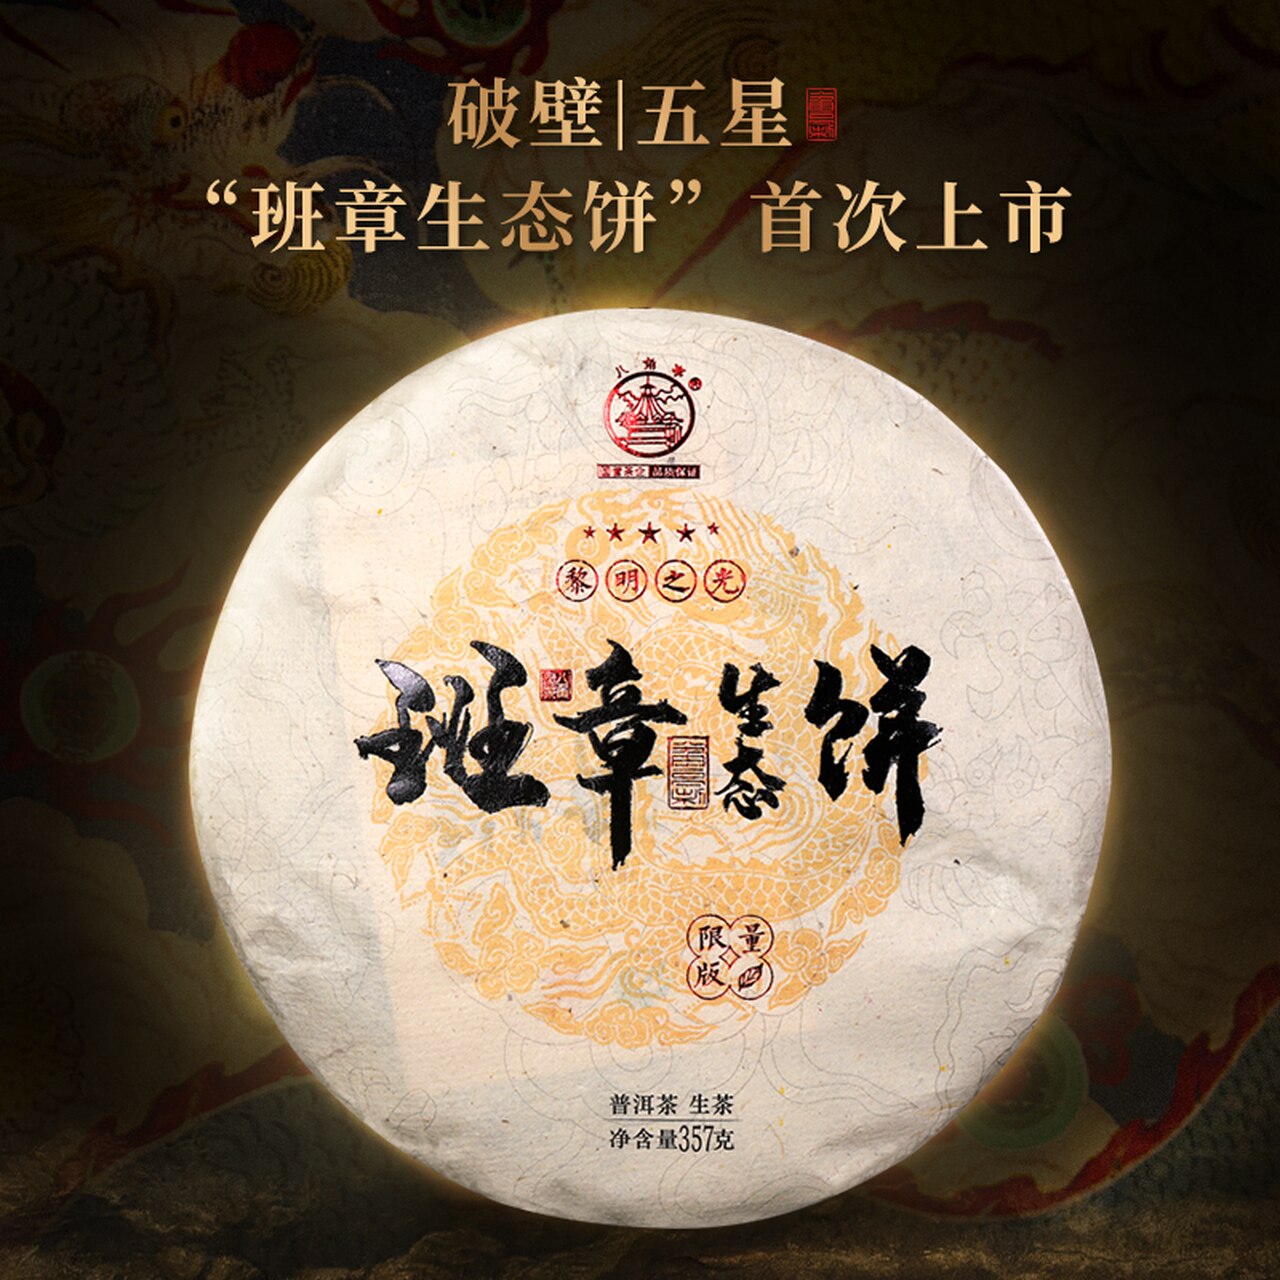 BAJIAOTING Brand Ban Zhang Ecological Cake Pu-erh Tea Cake 2019